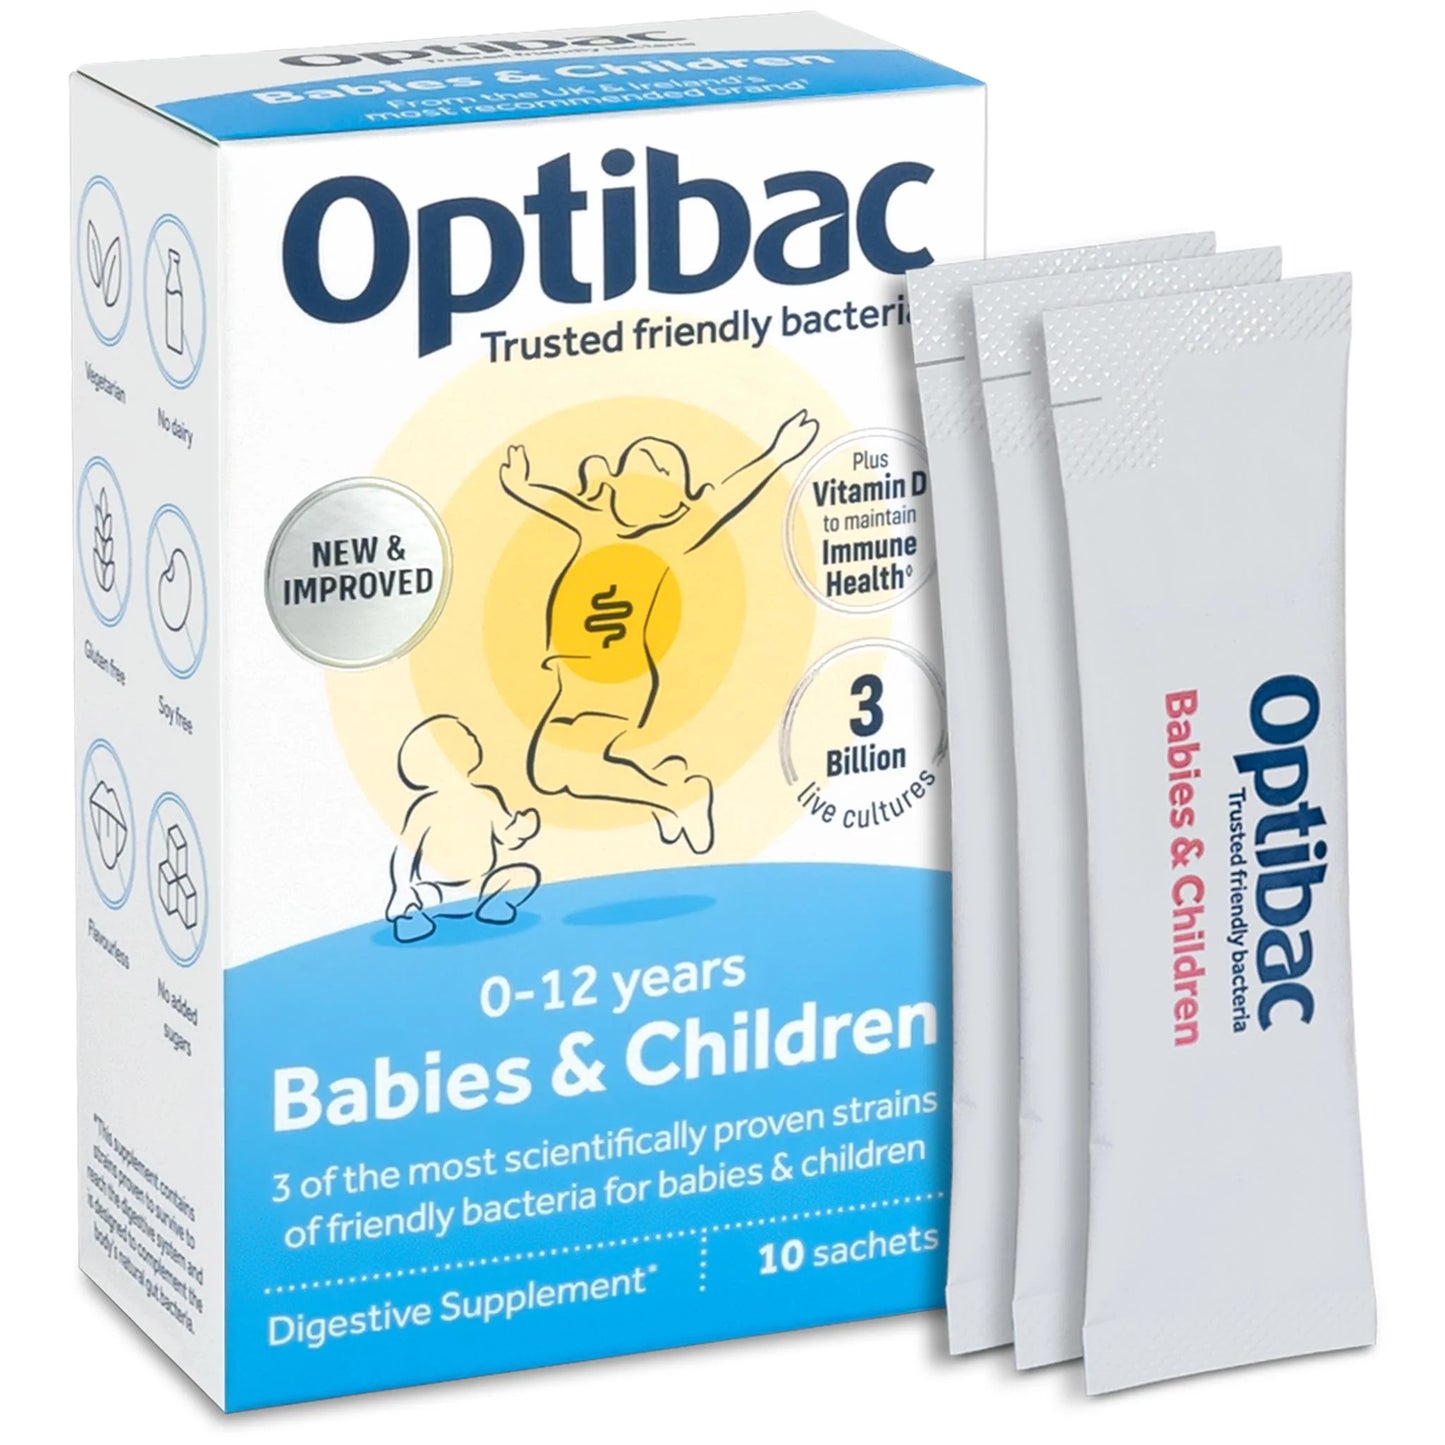 OPTIBAC PROBIOTICS FOR BABIES & CHILDREN